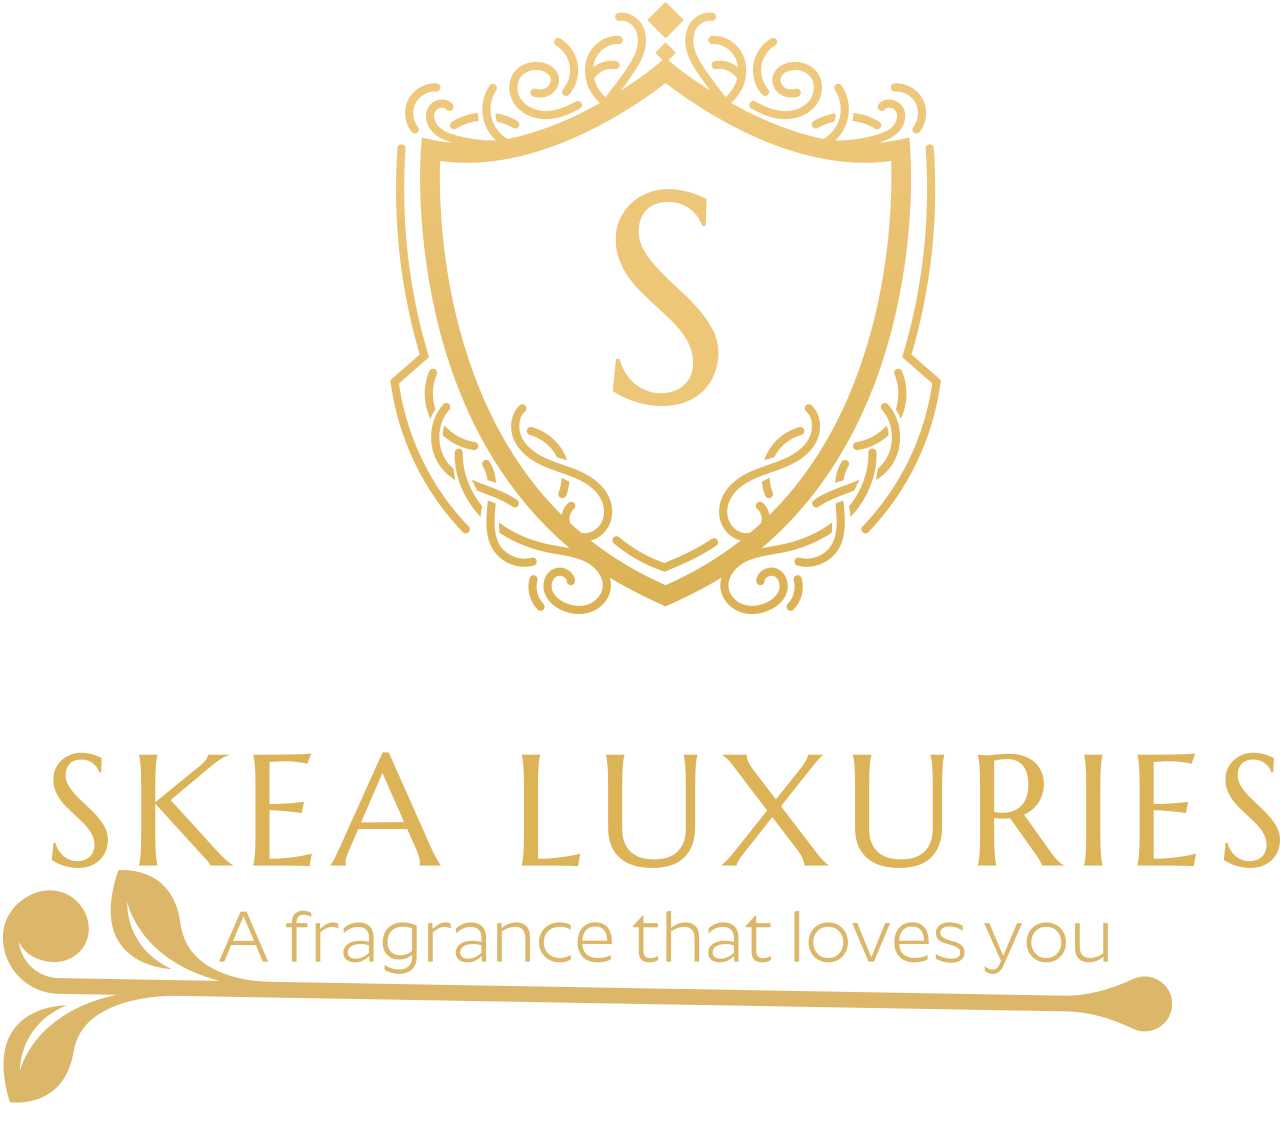 SKEA LUXURIES's logo